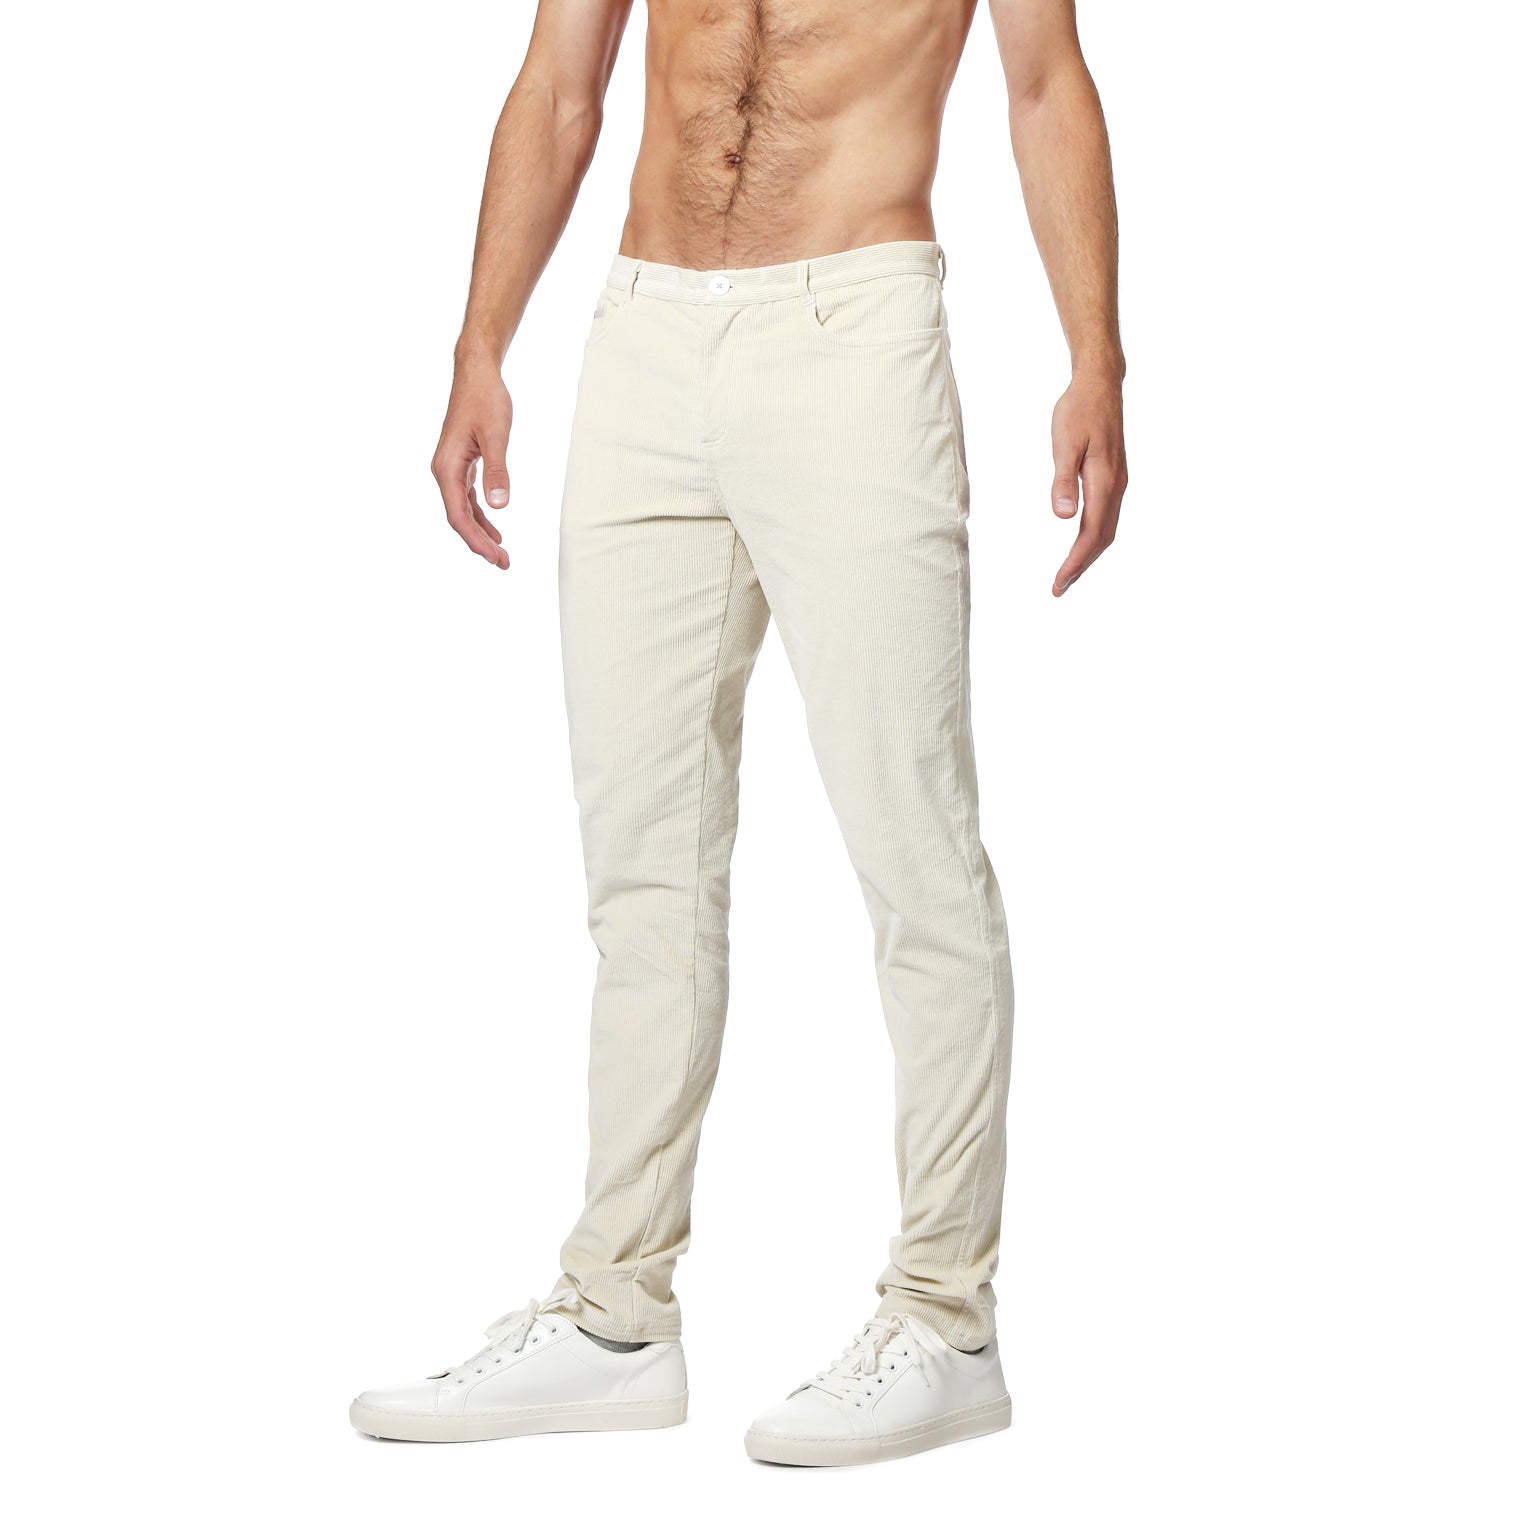 NEW- Winter White Stretch Corduroy Apollo Jeans